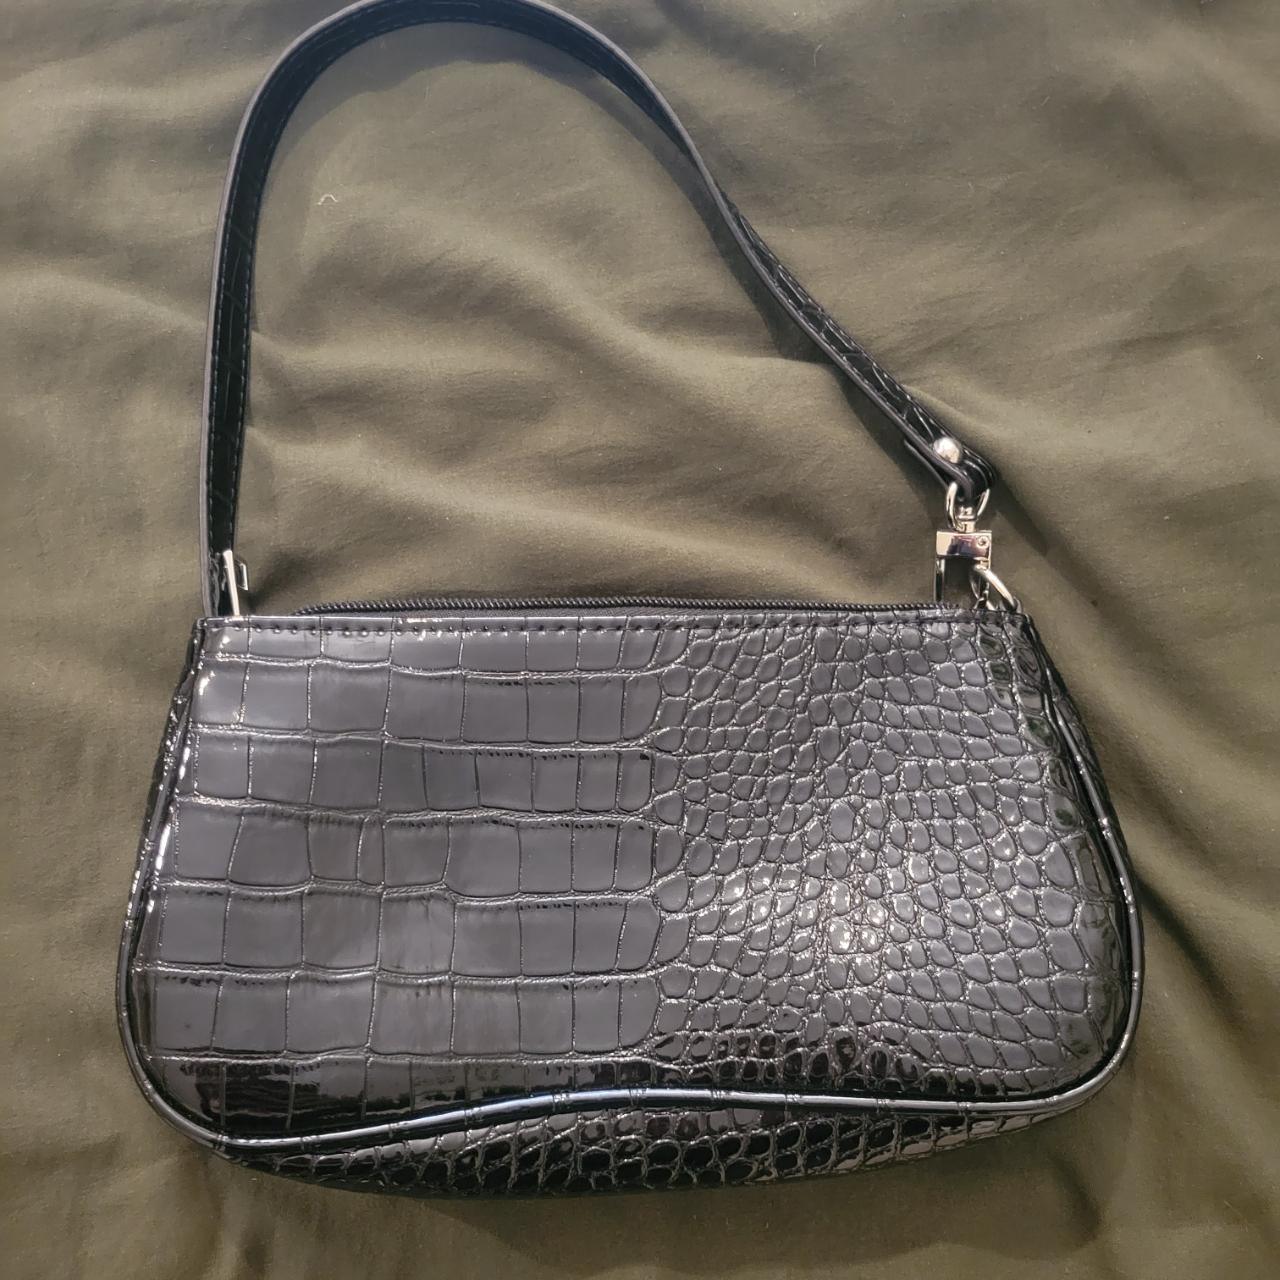 Black faux leather croc print mini purse no flaws,... - Depop